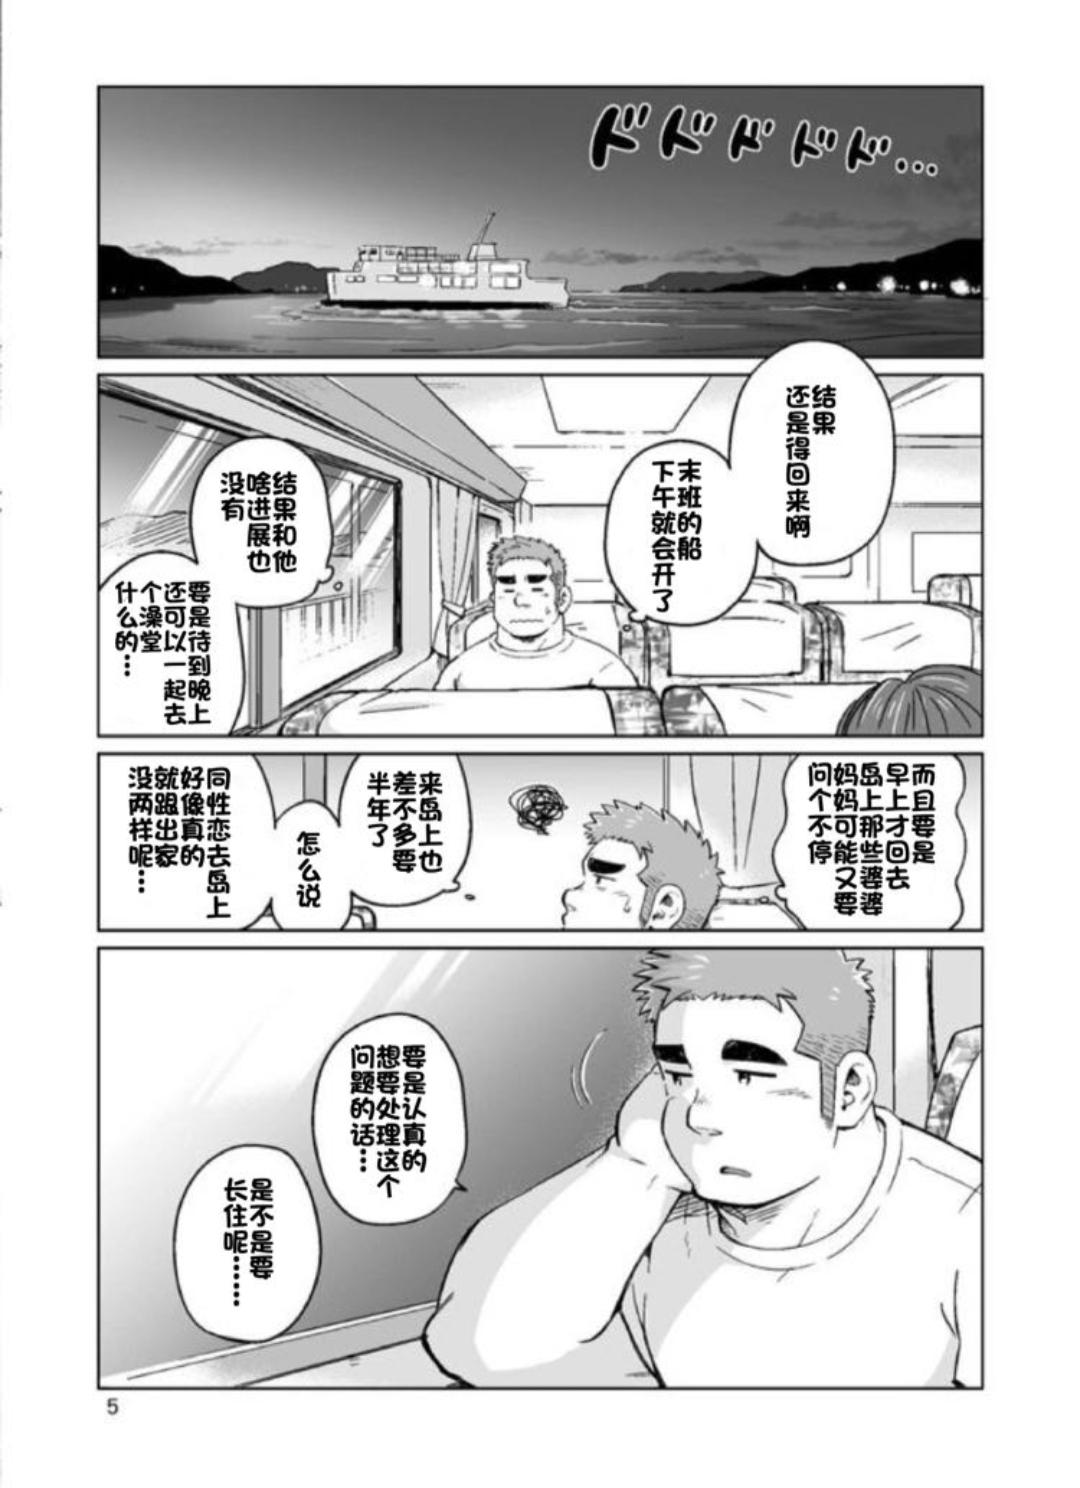 SUV WAVE（SUV）シティボイと瀬戸の島（城市男孩与濑户岛）（Chinese）（简体中文） 5